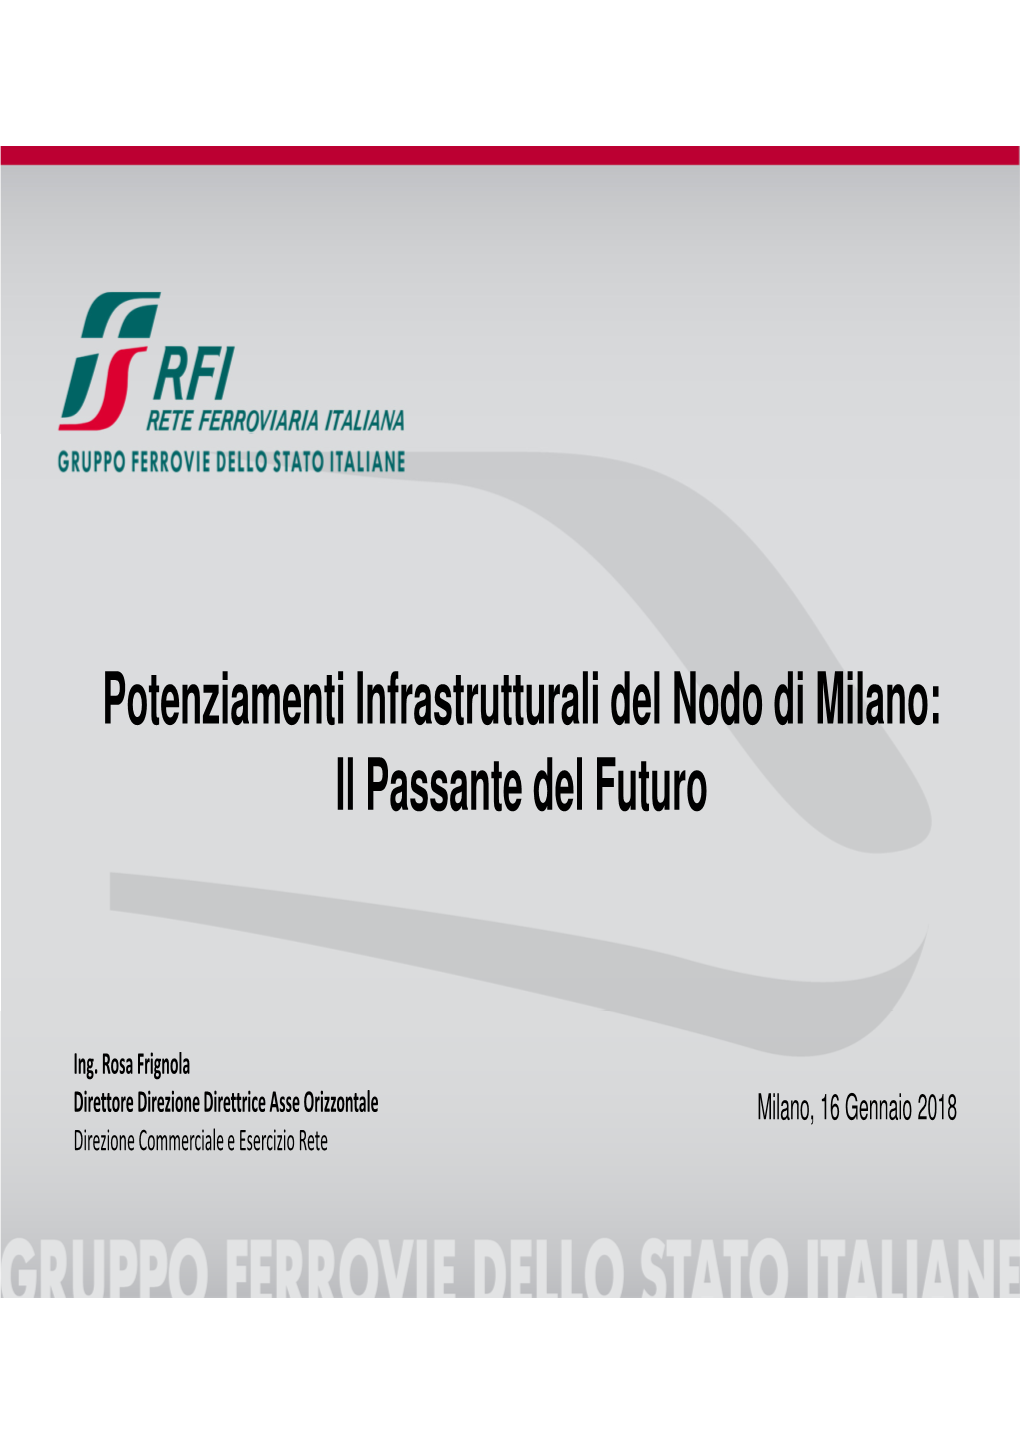 Potenziamenti Infrastrutturali Del Nodo Di Milano: Il Passante Del Futuro